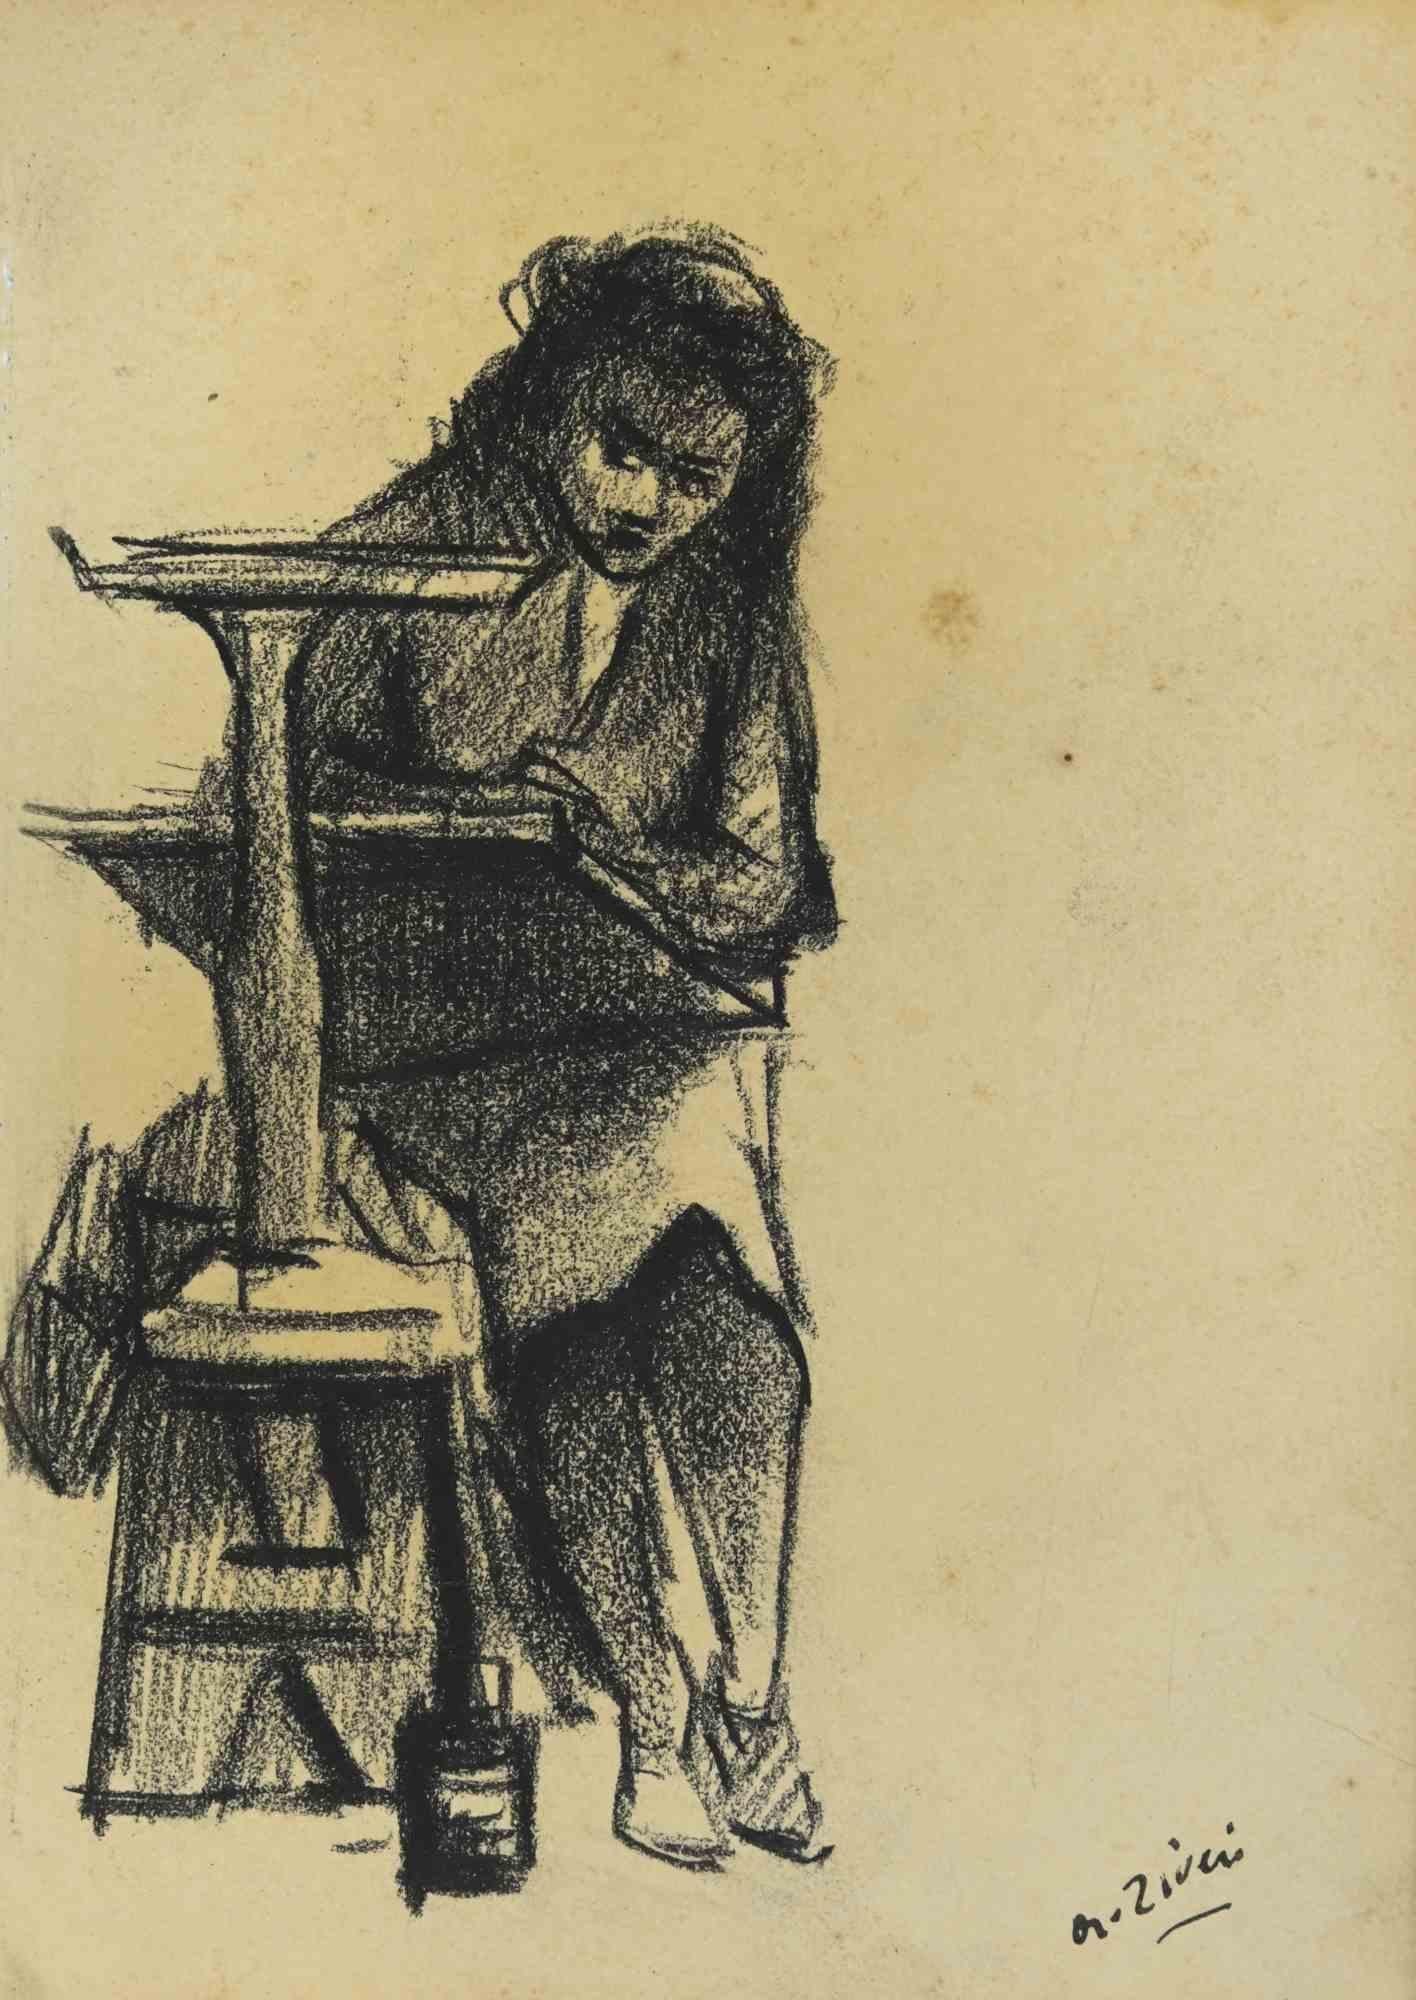 Painter ist eine Zeichnung von Alberto Ziveri aus den 1930er Jahren.

Zeichenkohle auf Papier.

Handsigniert.

In gutem Zustand mit leichten Stockflecken.

Das Kunstwerk wird durch geschickte Striche meisterhaft dargestellt.

Alberto Ziveri (Rom,